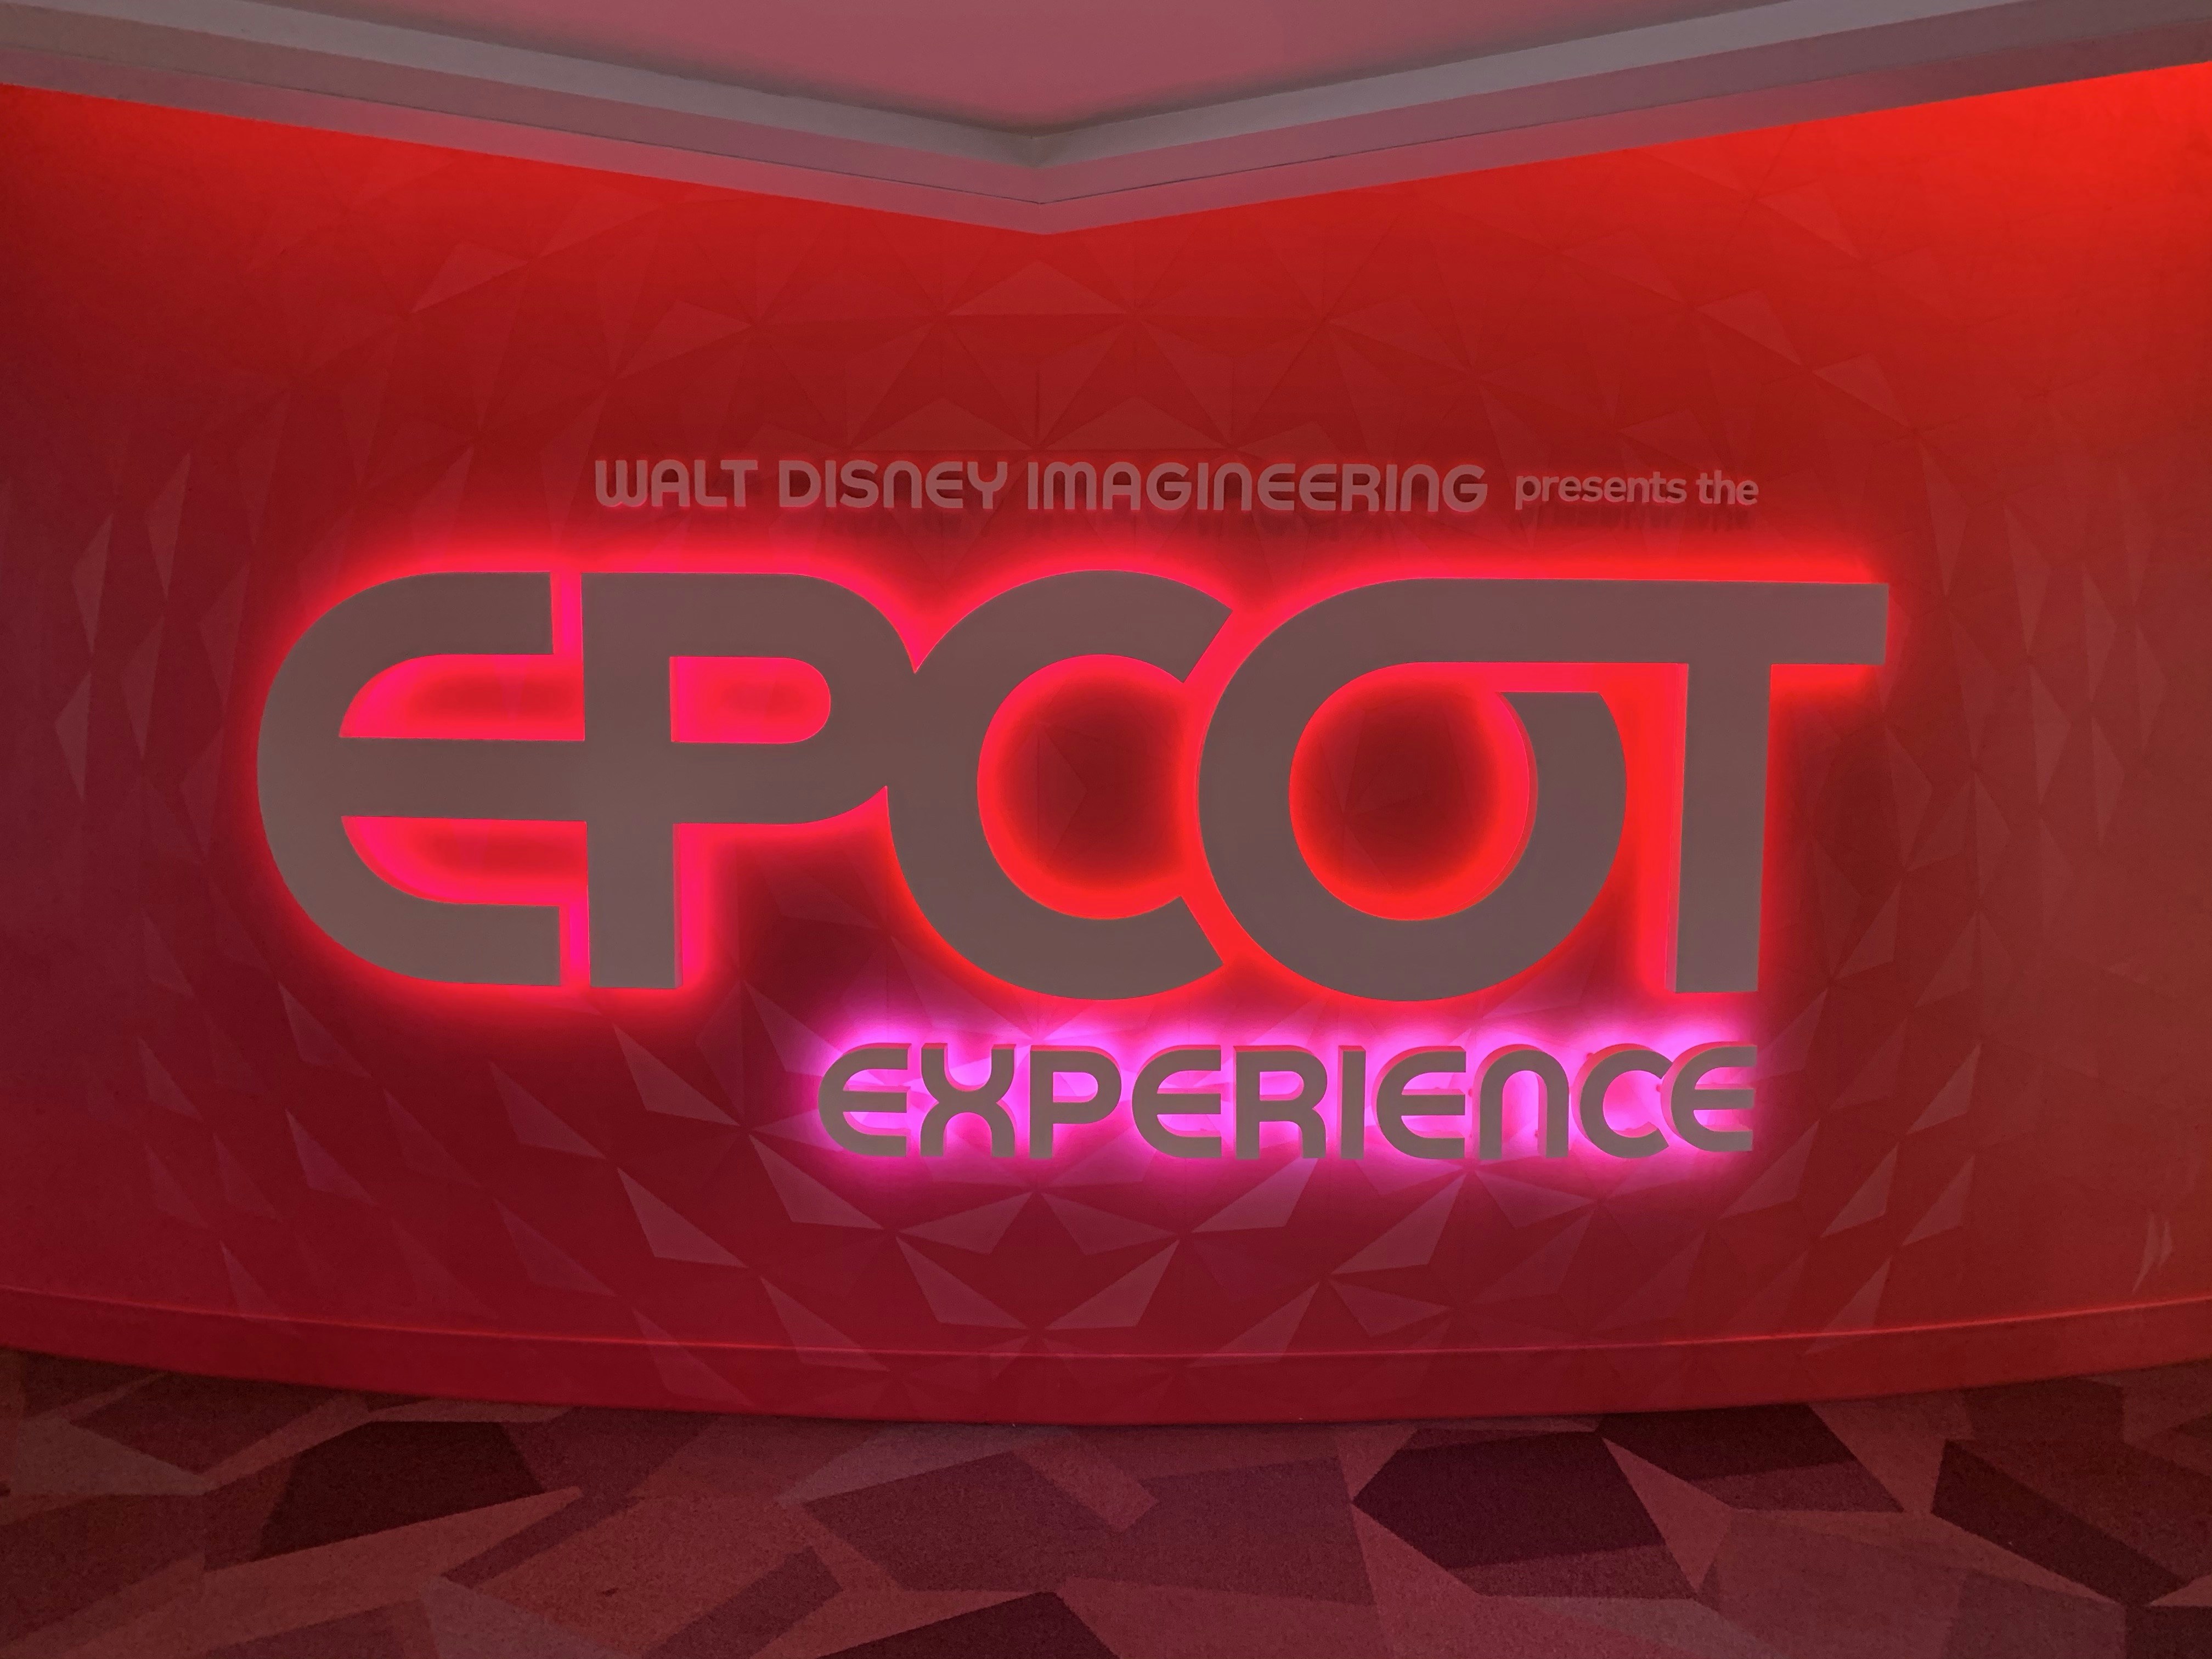 06 020720 EPCOT Experience Logo Entrance .jpeg?auto=compress%2Cformat&ixlib=php 1.2